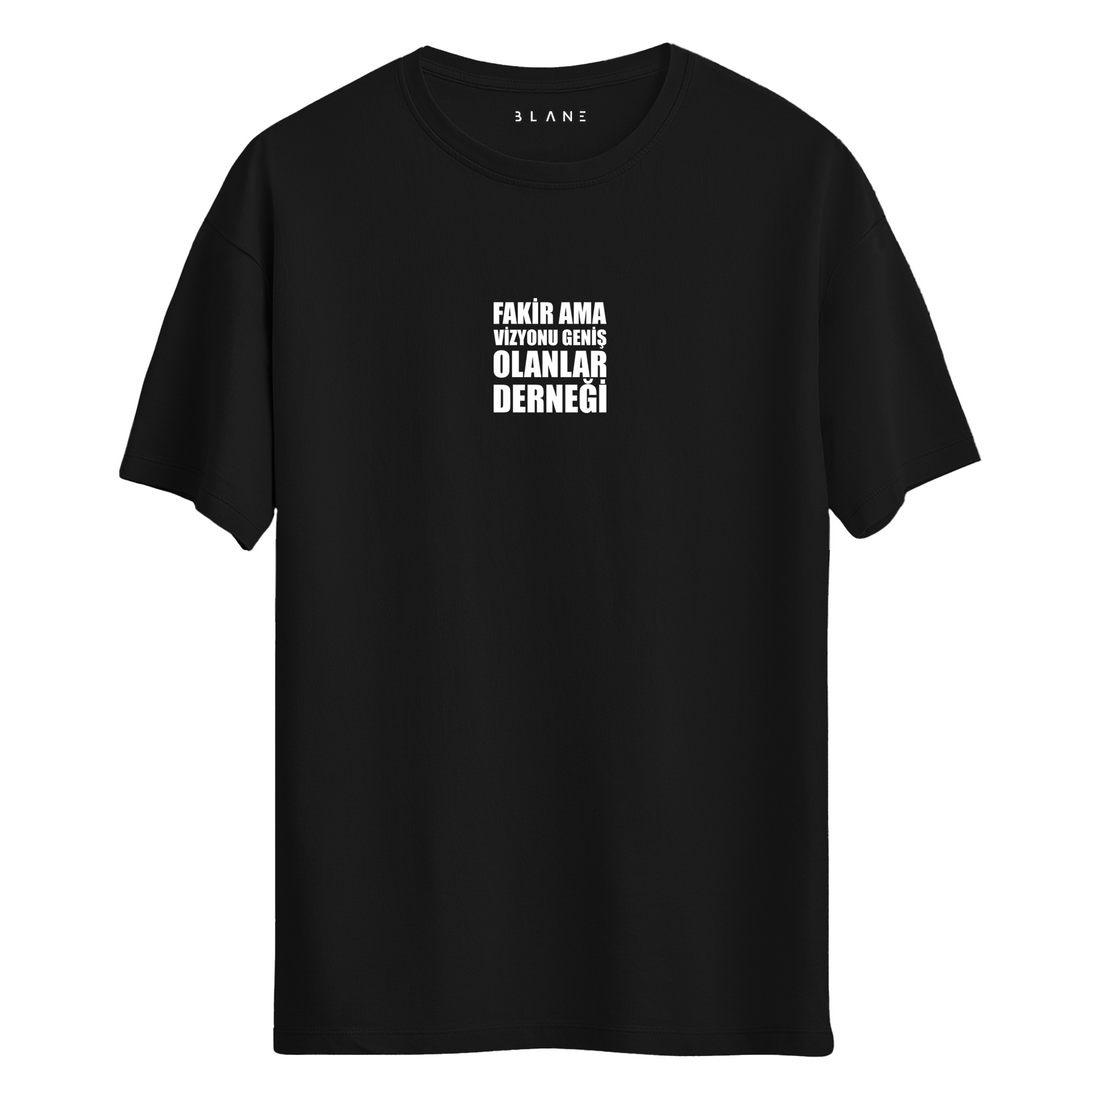 Fakir Ama Vizyonu Geniş Olanlar Derneği - T-Shirt